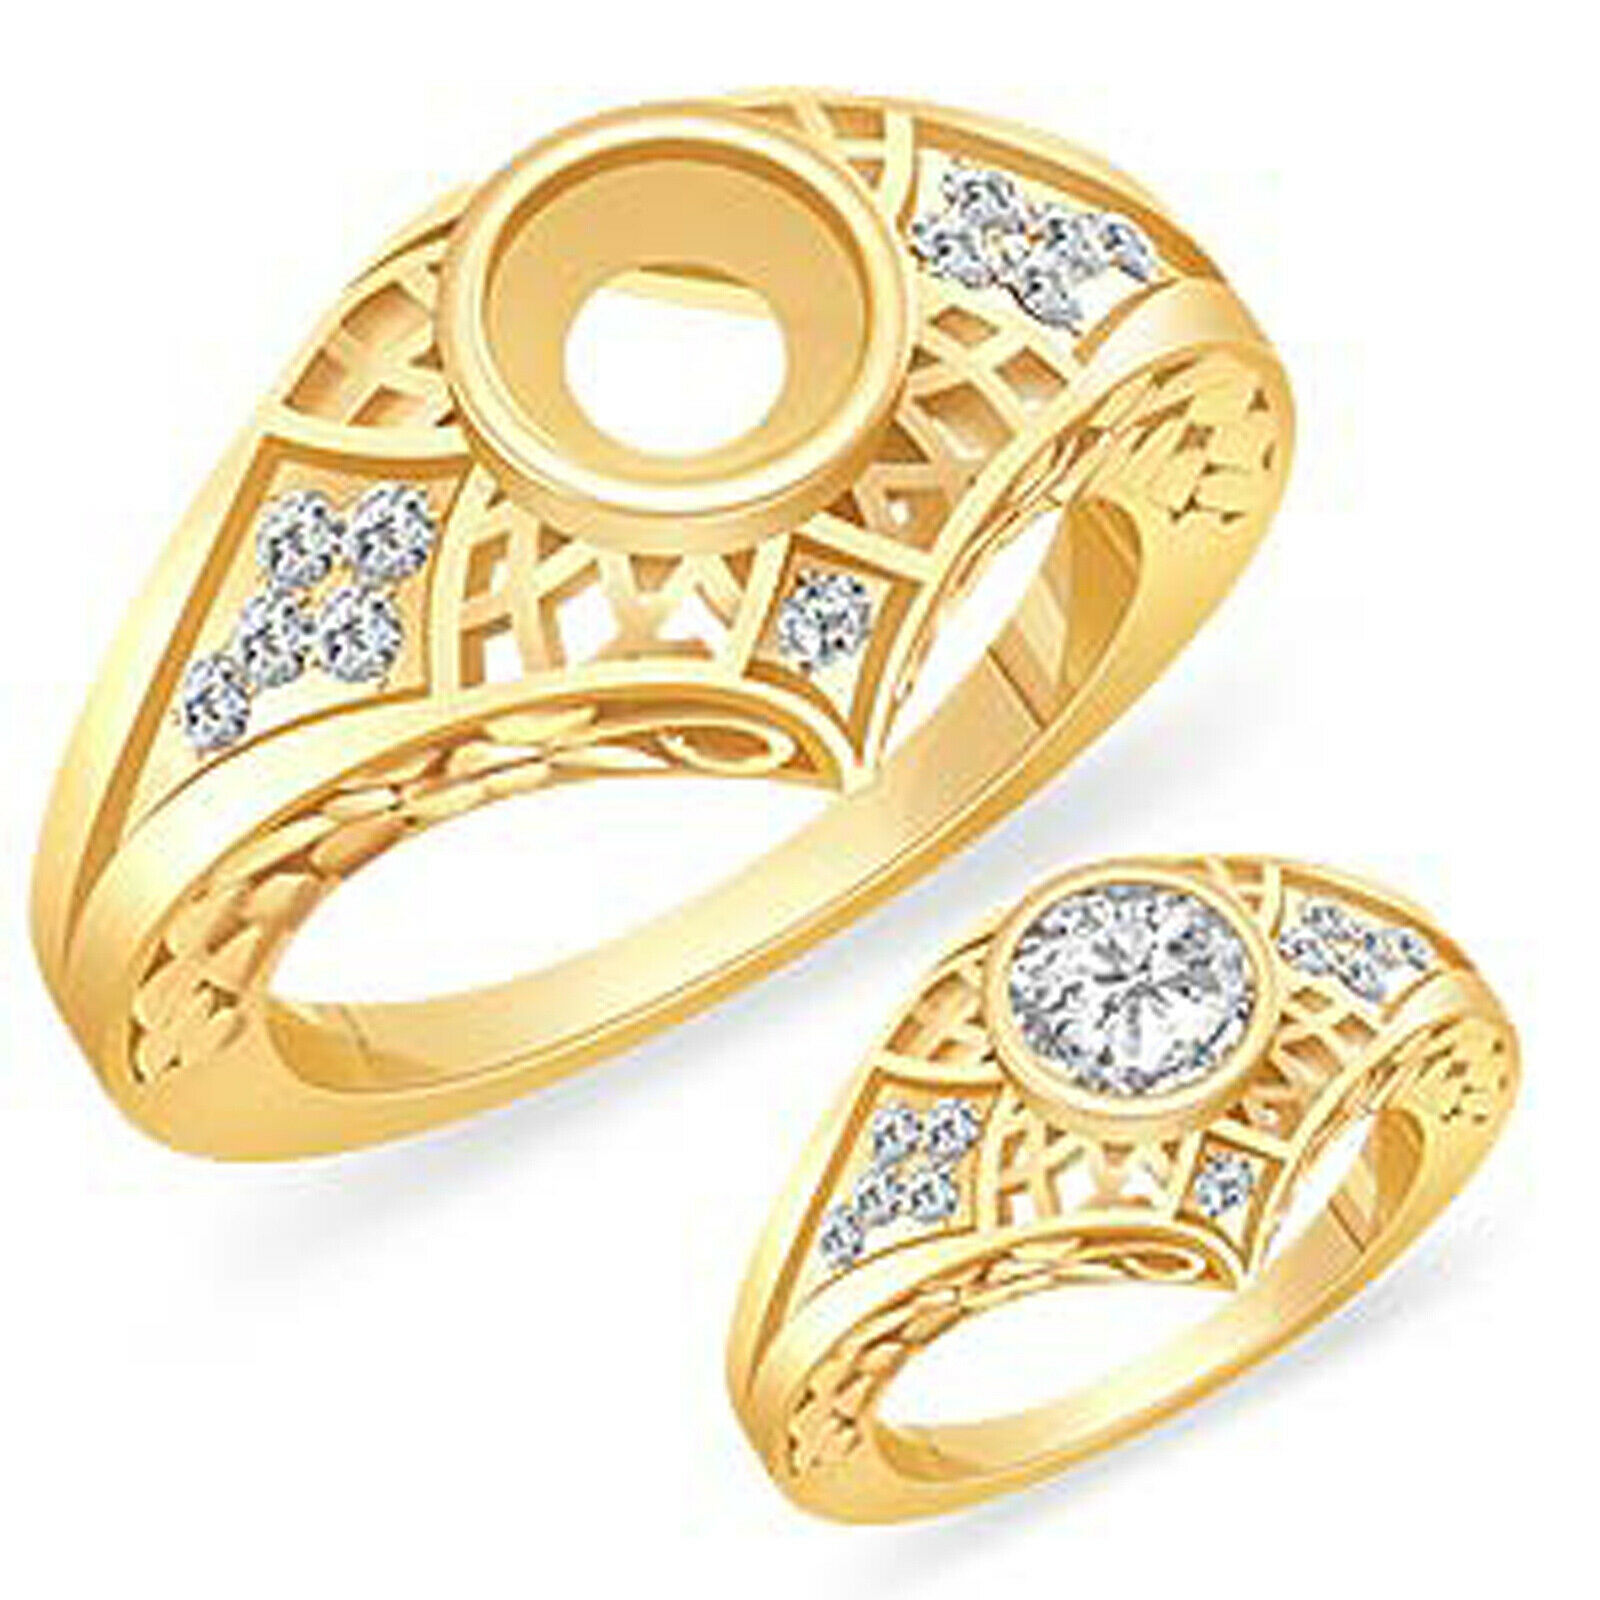 0.25 Ct Round Diamond Setting Vs2 G Wedding Engagement Ring 14k Gold Yellow